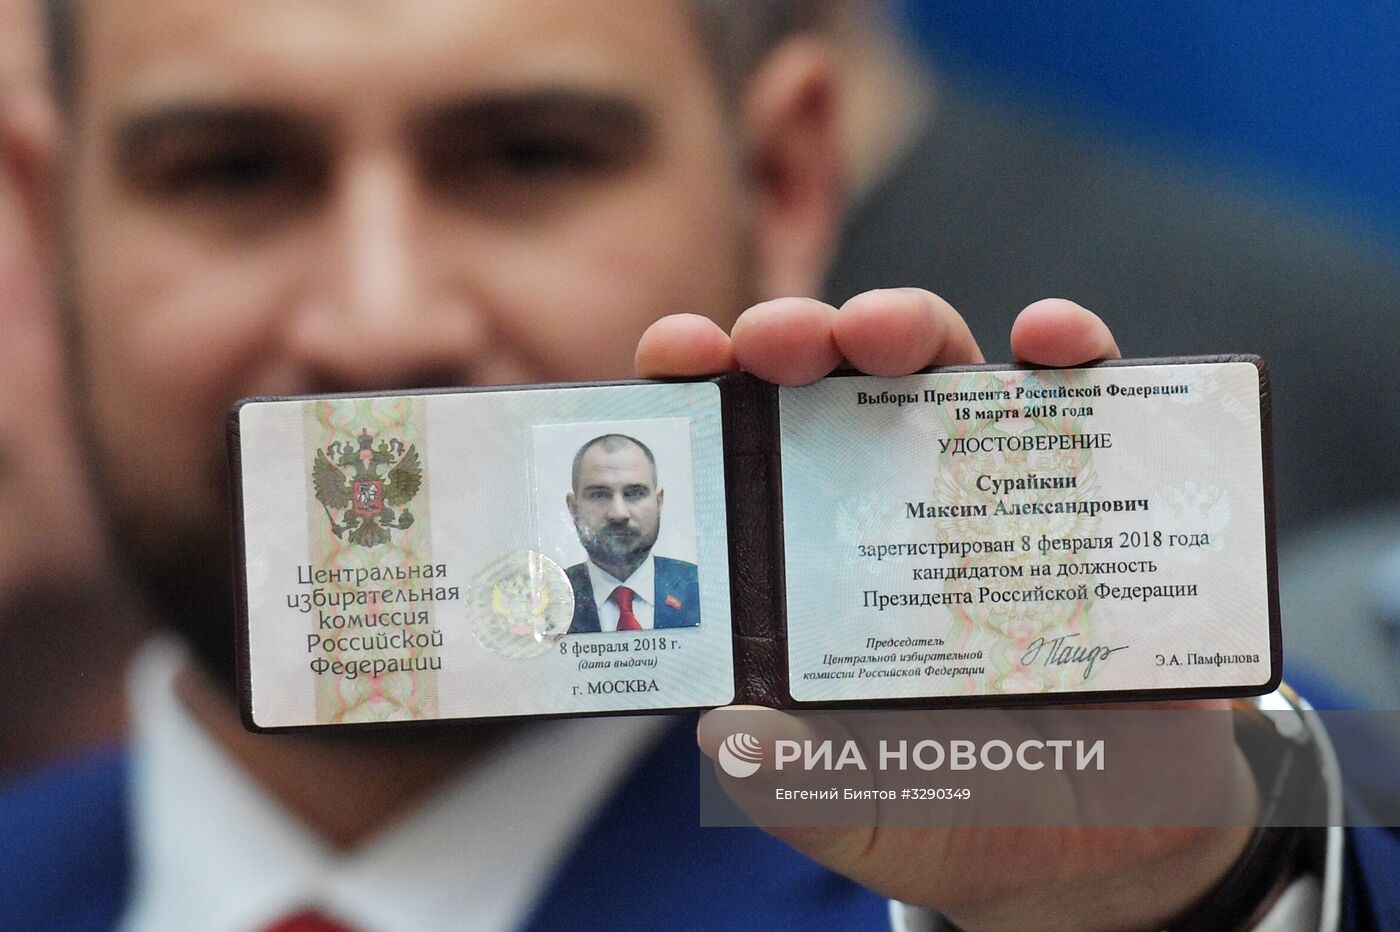 Регистрация кандидатов в президенты РФ